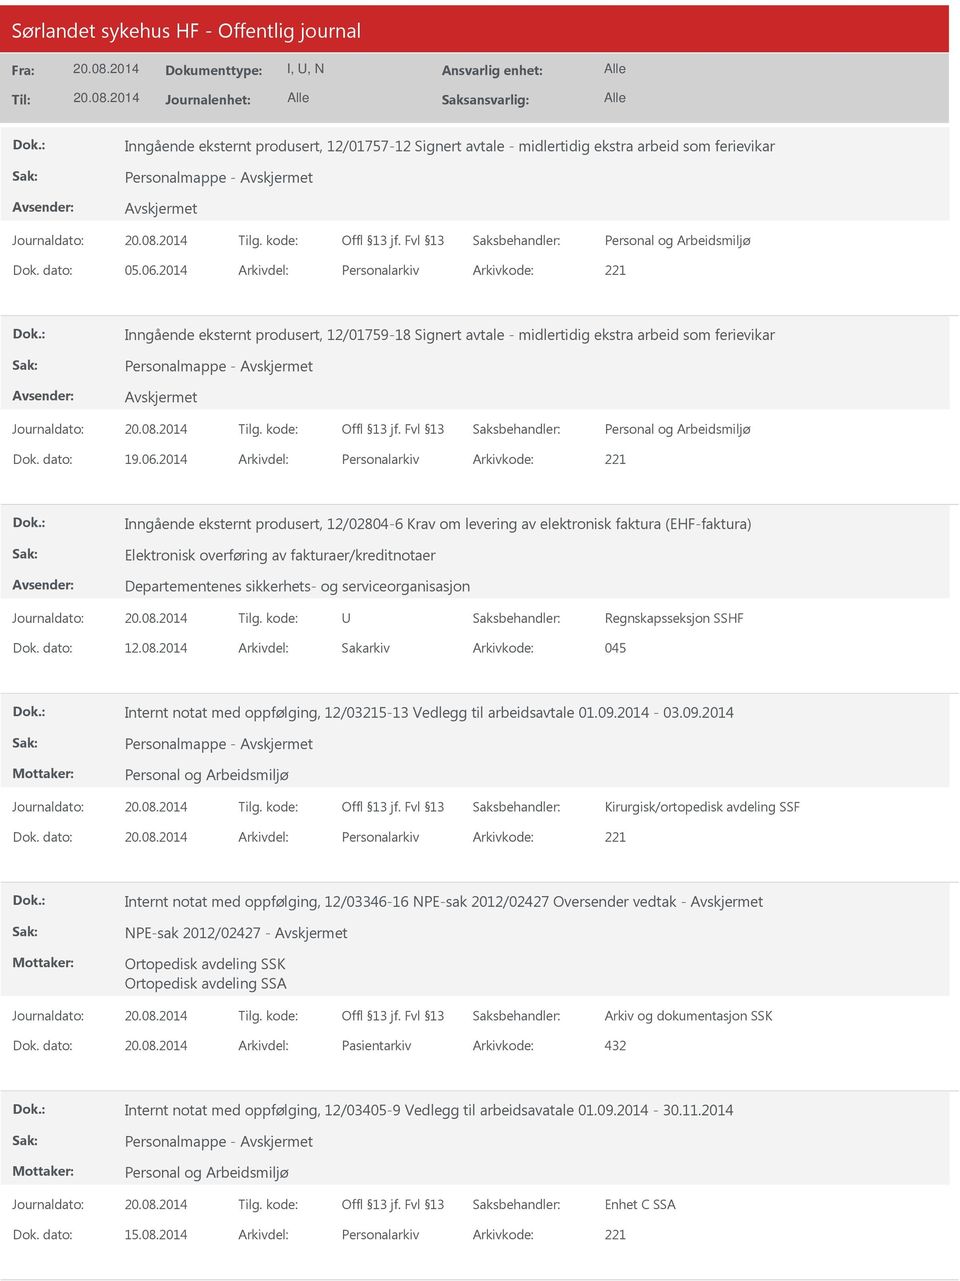 2014 Arkivdel: Personalarkiv Arkivkode: 221 Inngående eksternt produsert, 12/02804-6 Krav om levering av elektronisk faktura (EHF-faktura) Elektronisk overføring av fakturaer/kreditnotaer